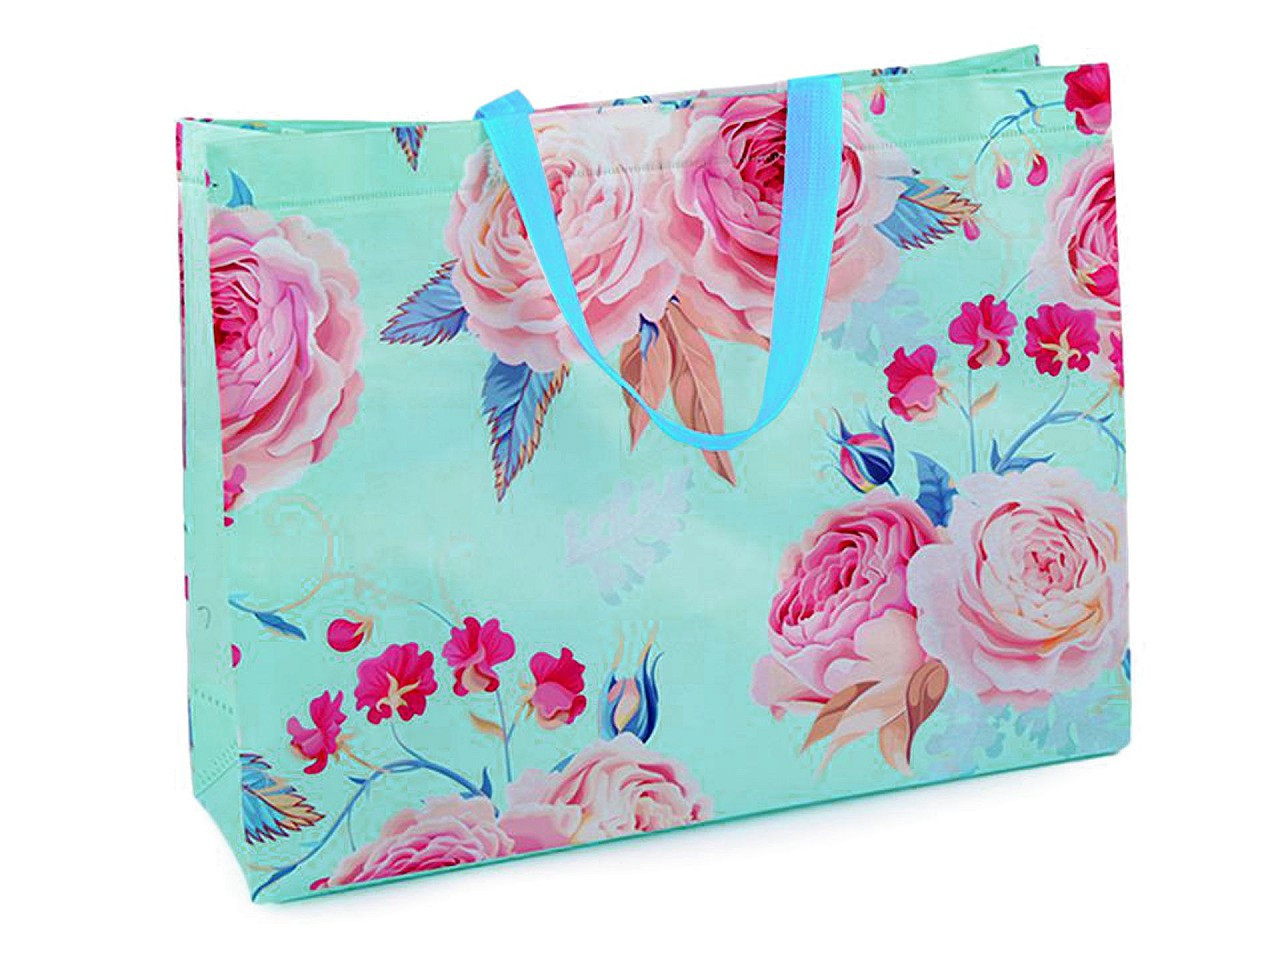 Nákupní taška s květy růže, velká 32x42 cm omyvatelná, barva 2 mint